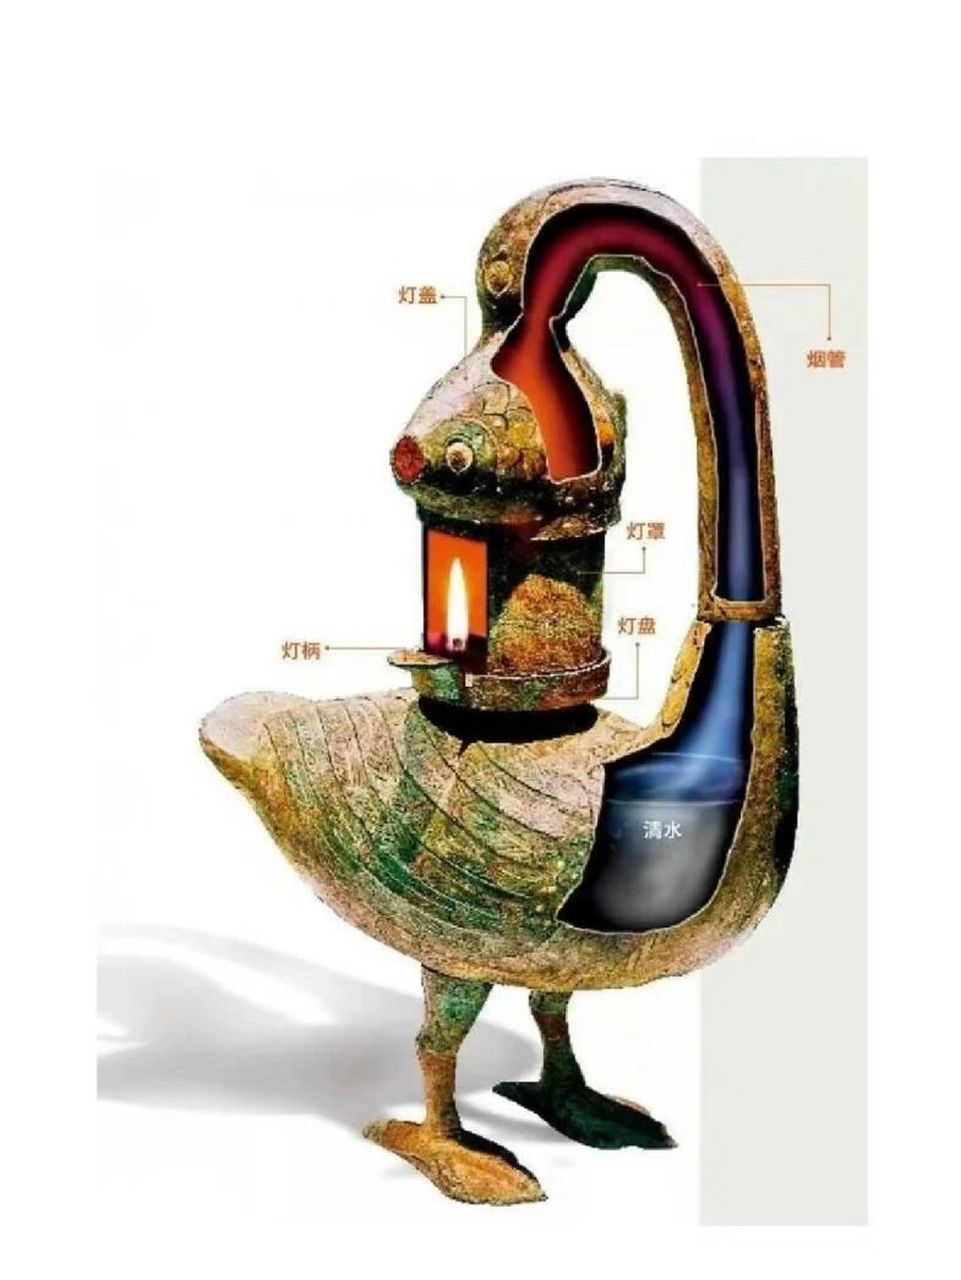 西汉彩绘雁鱼青铜红灯为西汉青铜器 1985年出土于山西省朔县照十八庄